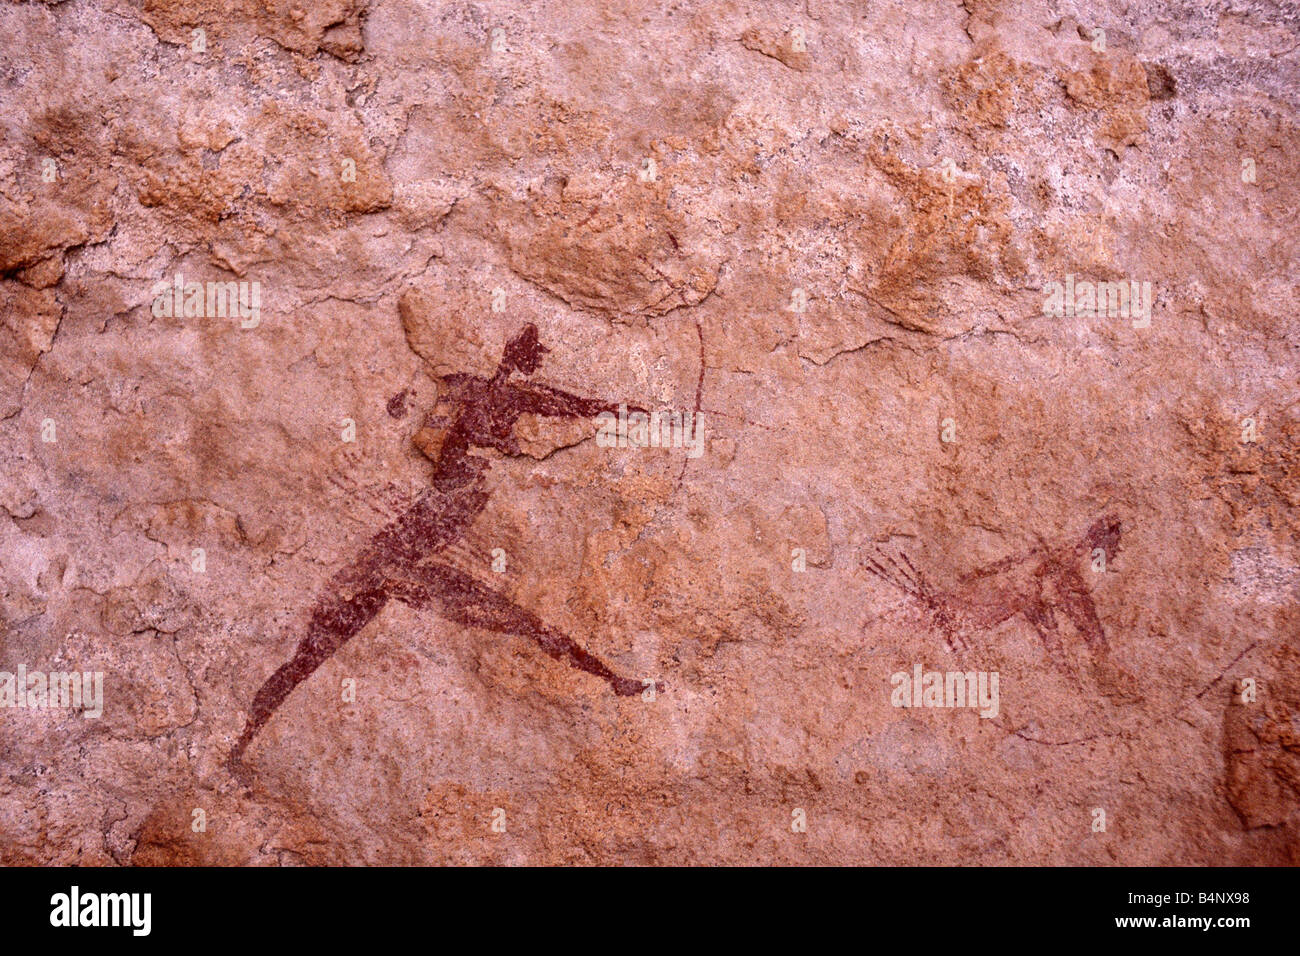 Algeria, Djanet. National Park Tassili n'Ajjer. UNESCO World Heritage site. Prehistoric rockpaintings. Sahara desert. Stock Photo